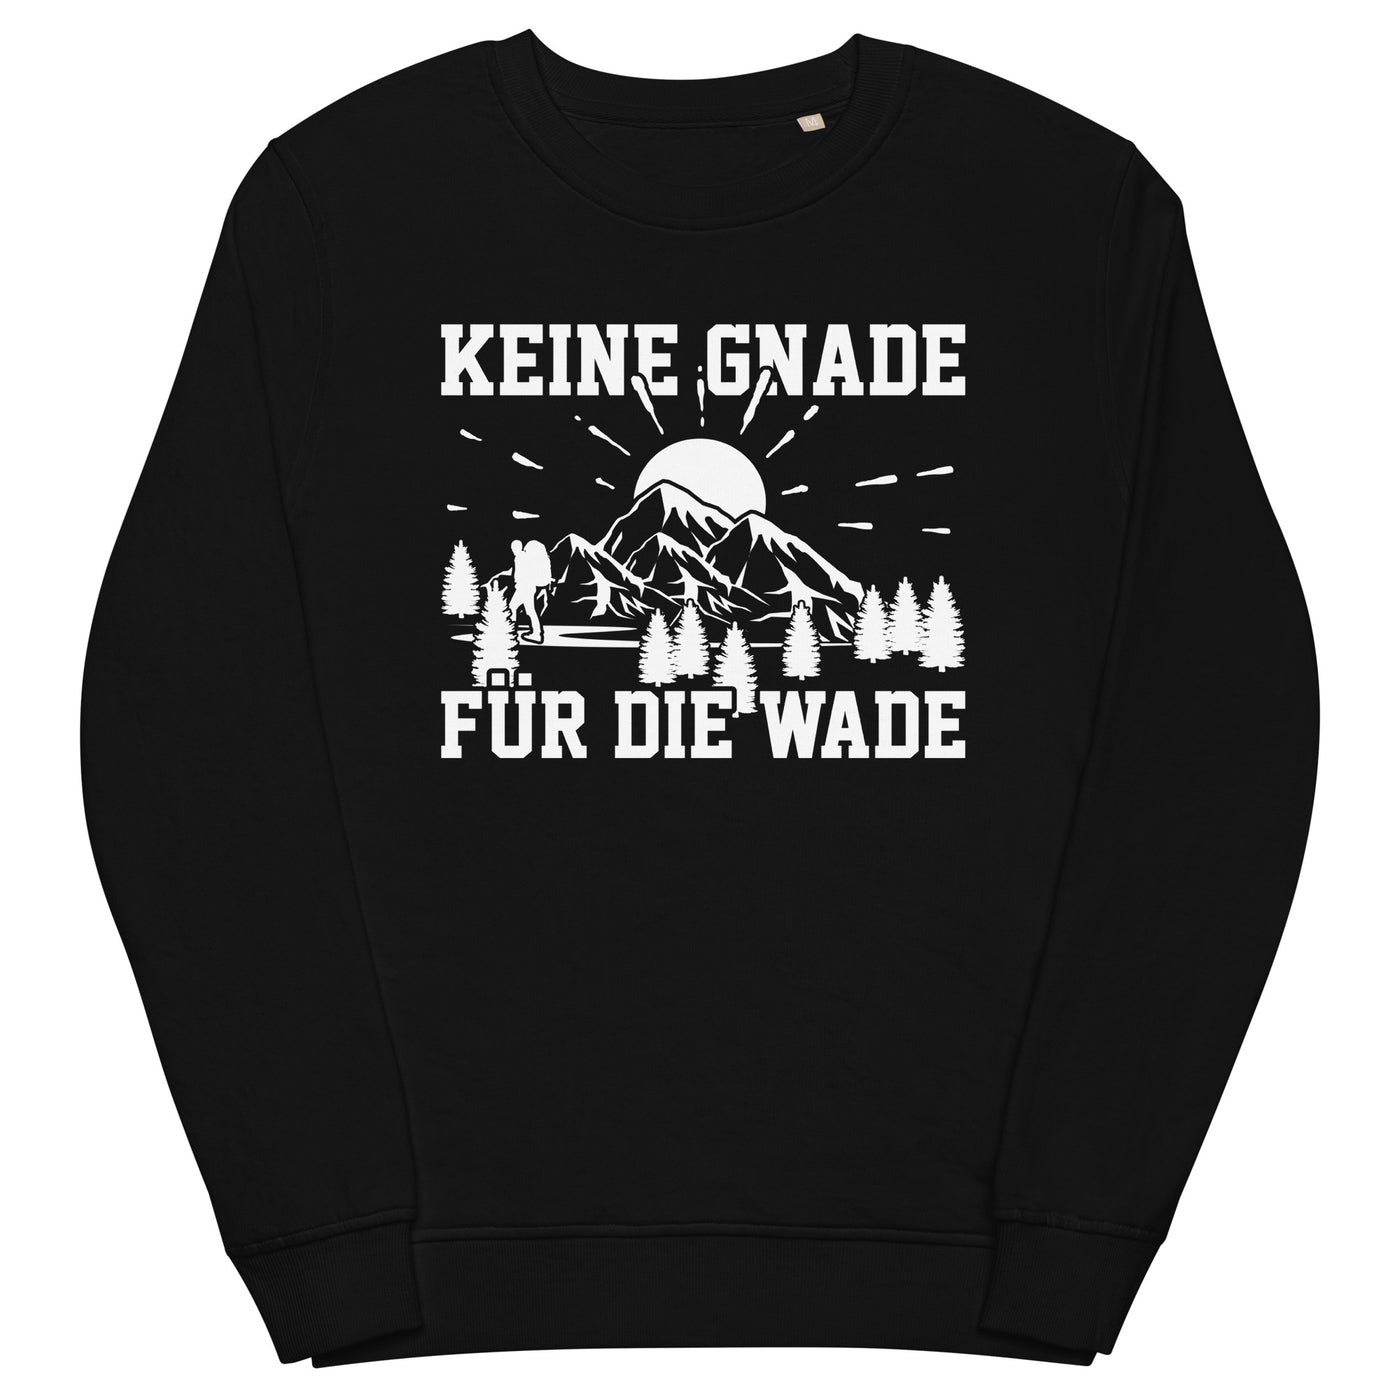 Keine Gnade für die Wade - Unisex Premium Organic Sweatshirt wandern xxx yyy zzz Black